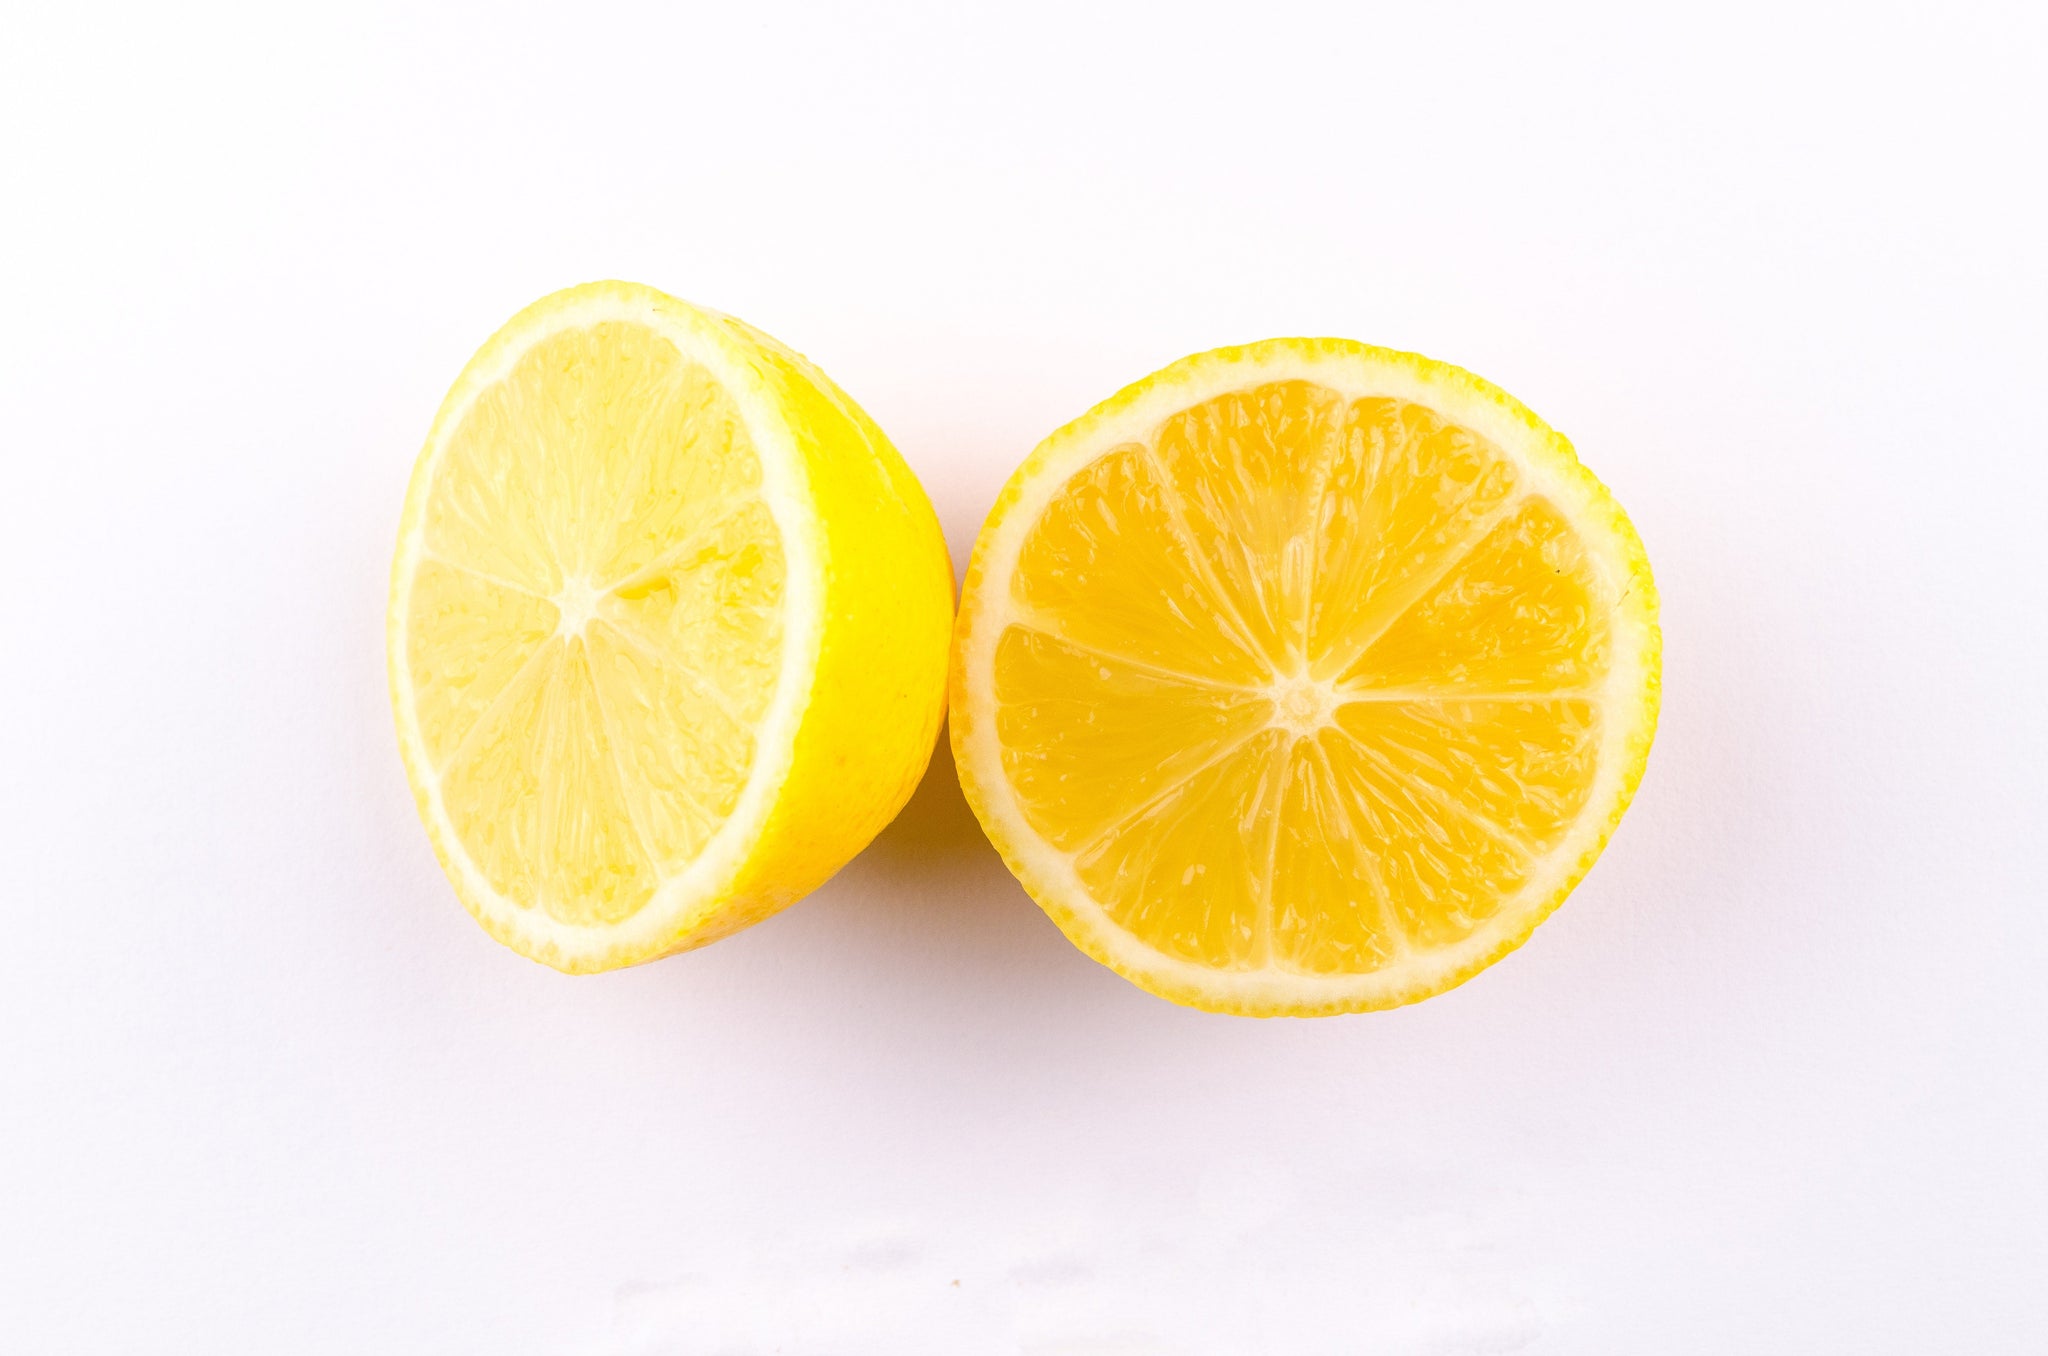 stm>Lemons, one